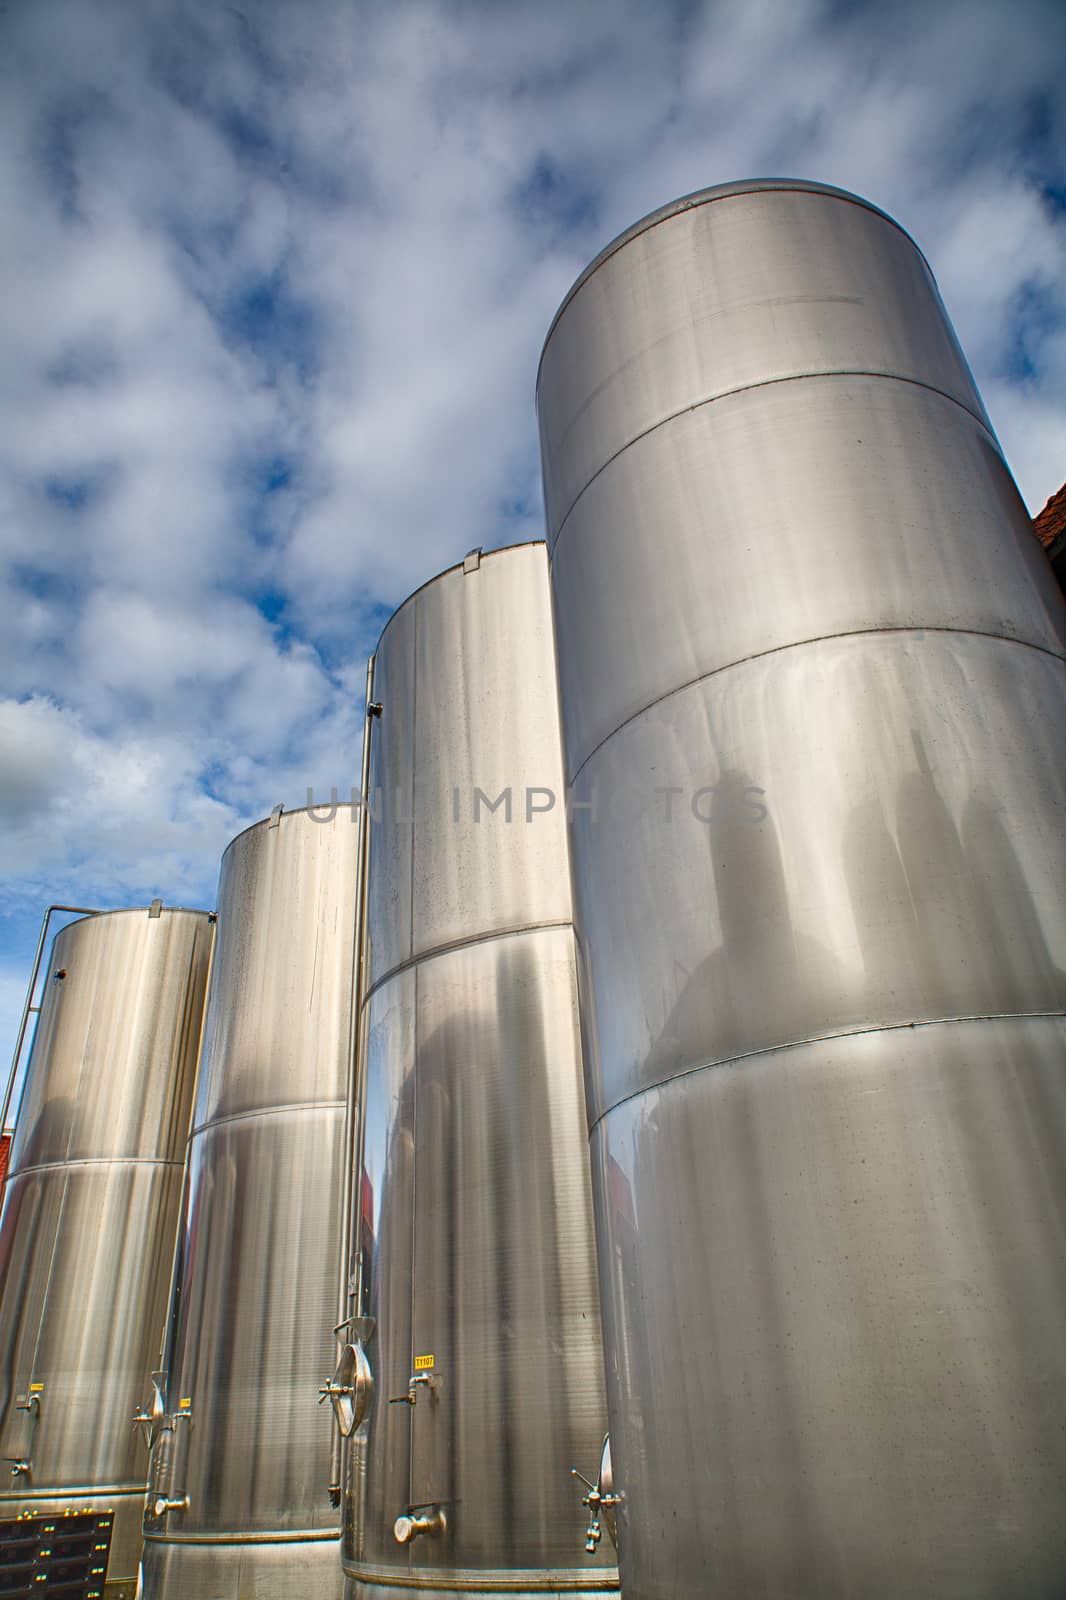 Modern steel tanks in a beer brewery